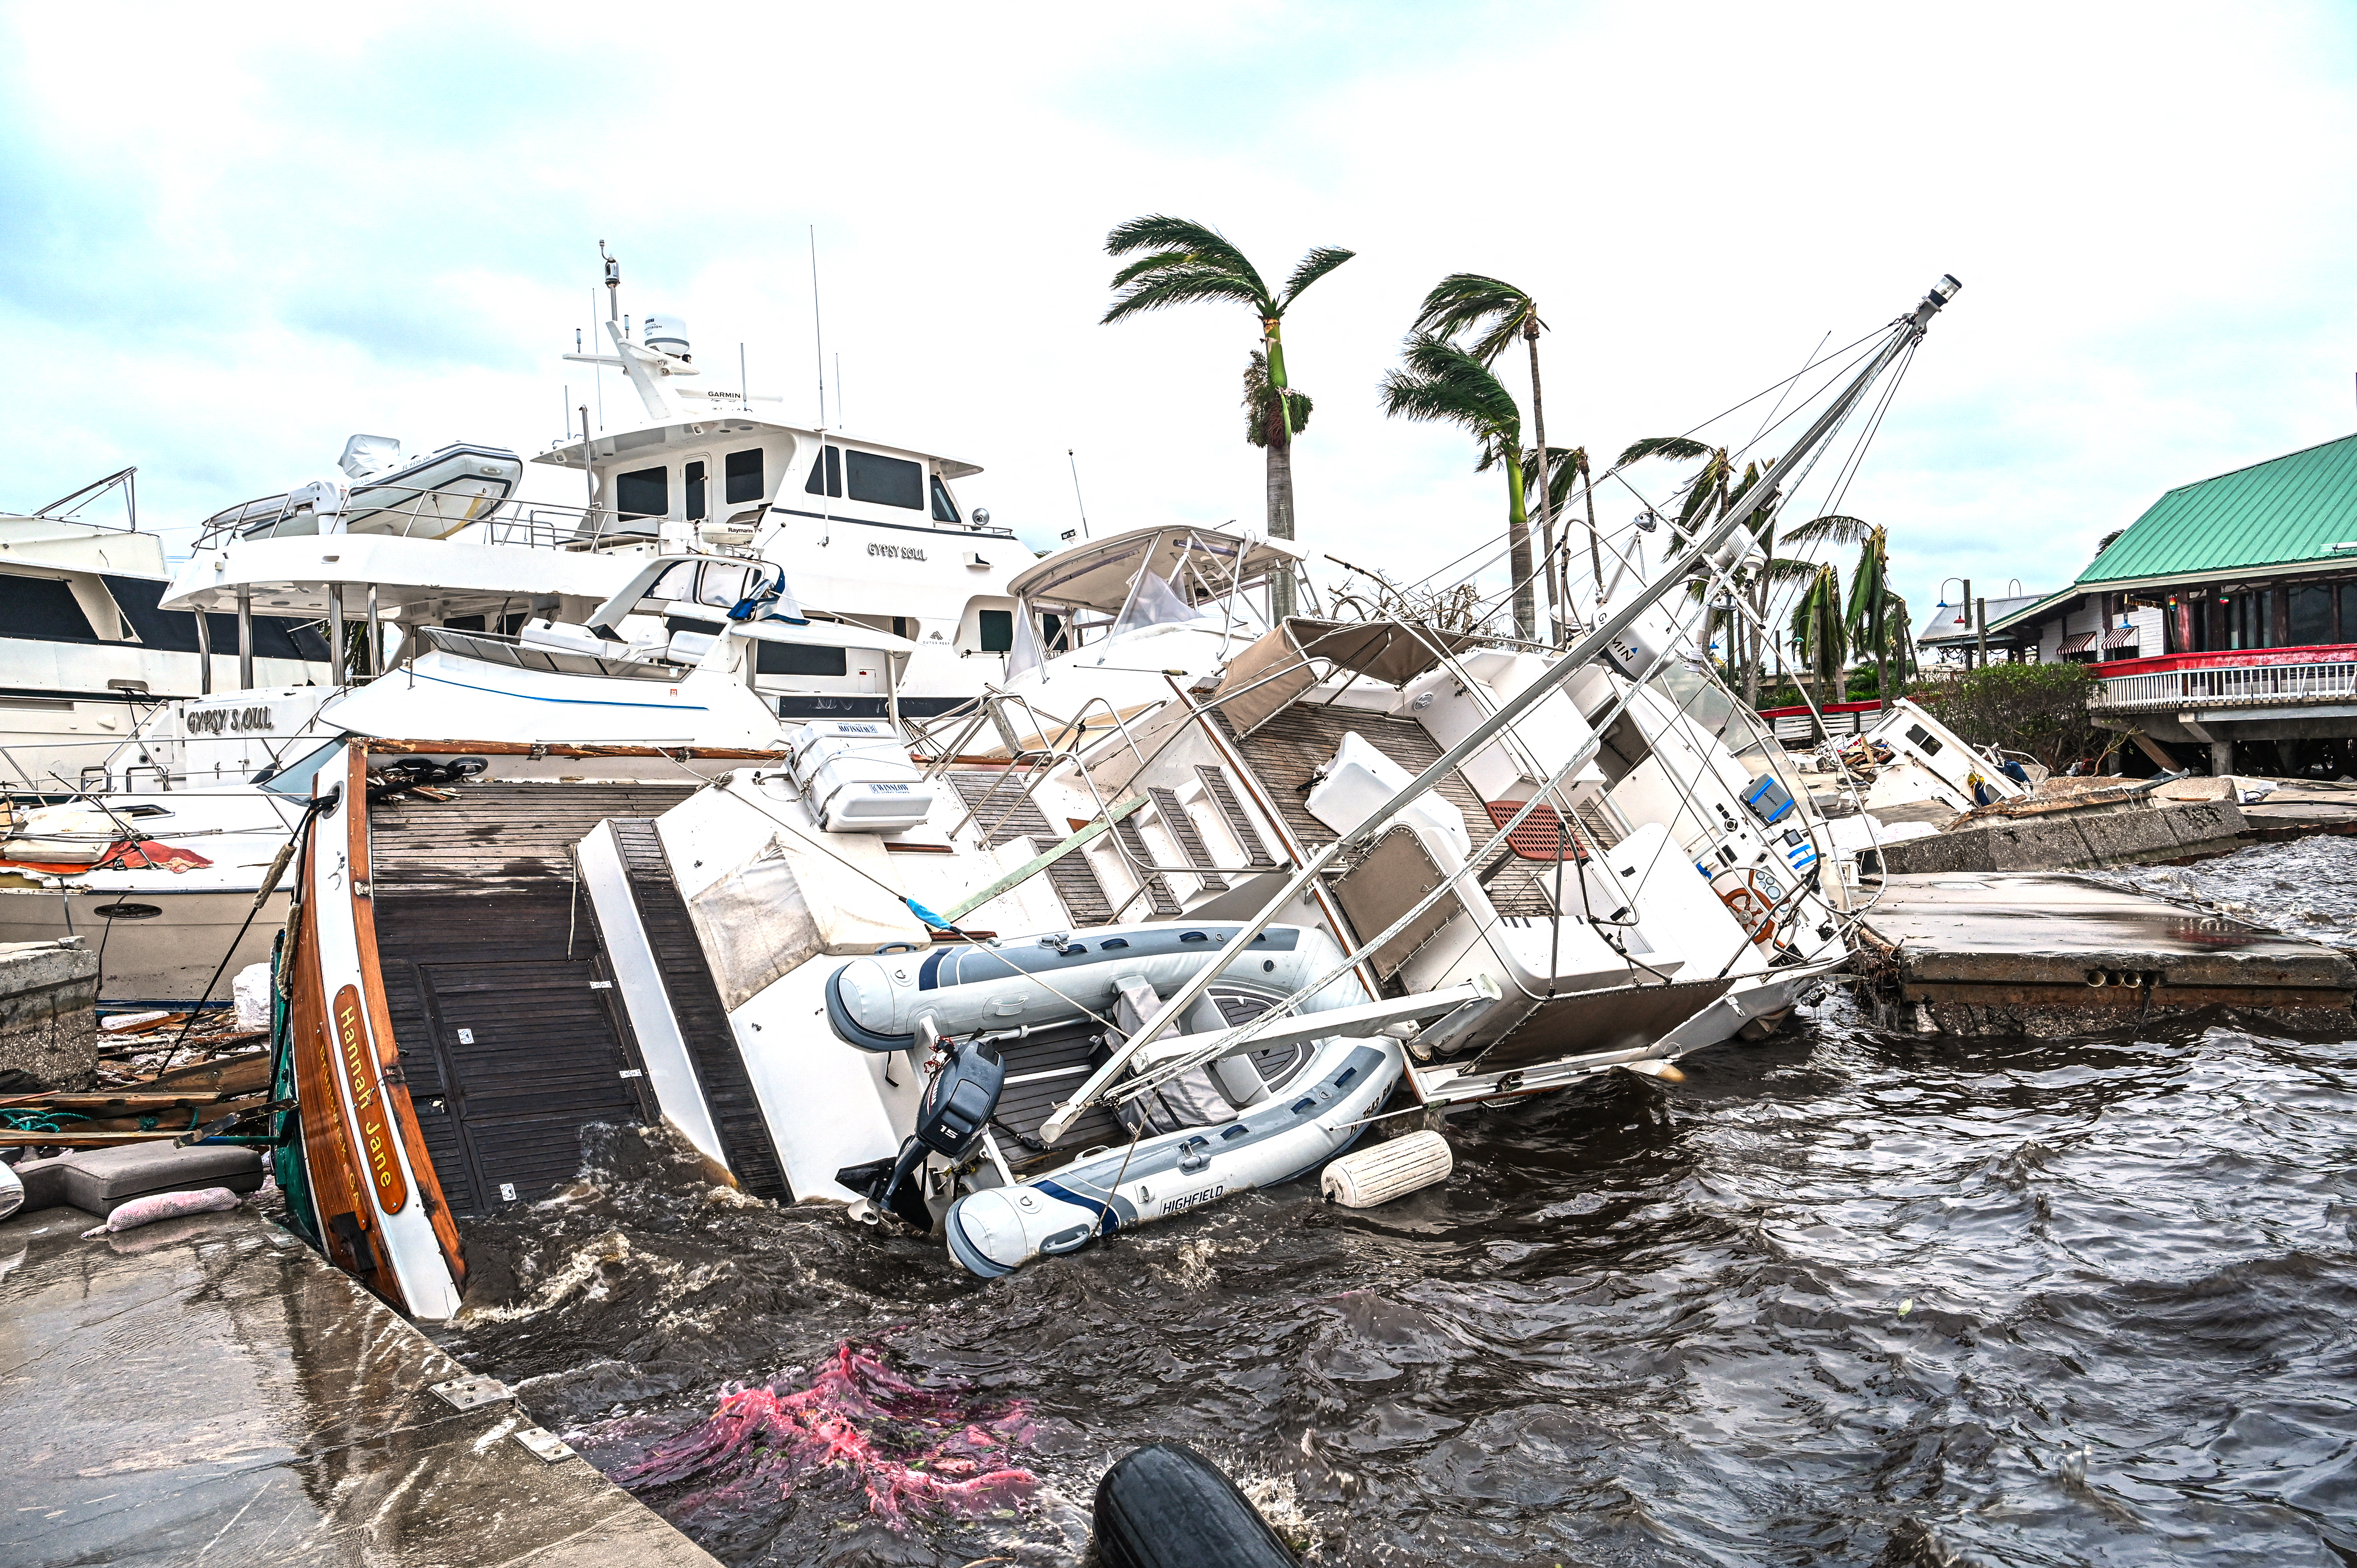 Un barco está parcialmente sumergido en un puerto deportivo después del huracán Ian en Fort Myers, Florida, el 29 de septiembre de 2022. (Giorgio VIERA / AFP)